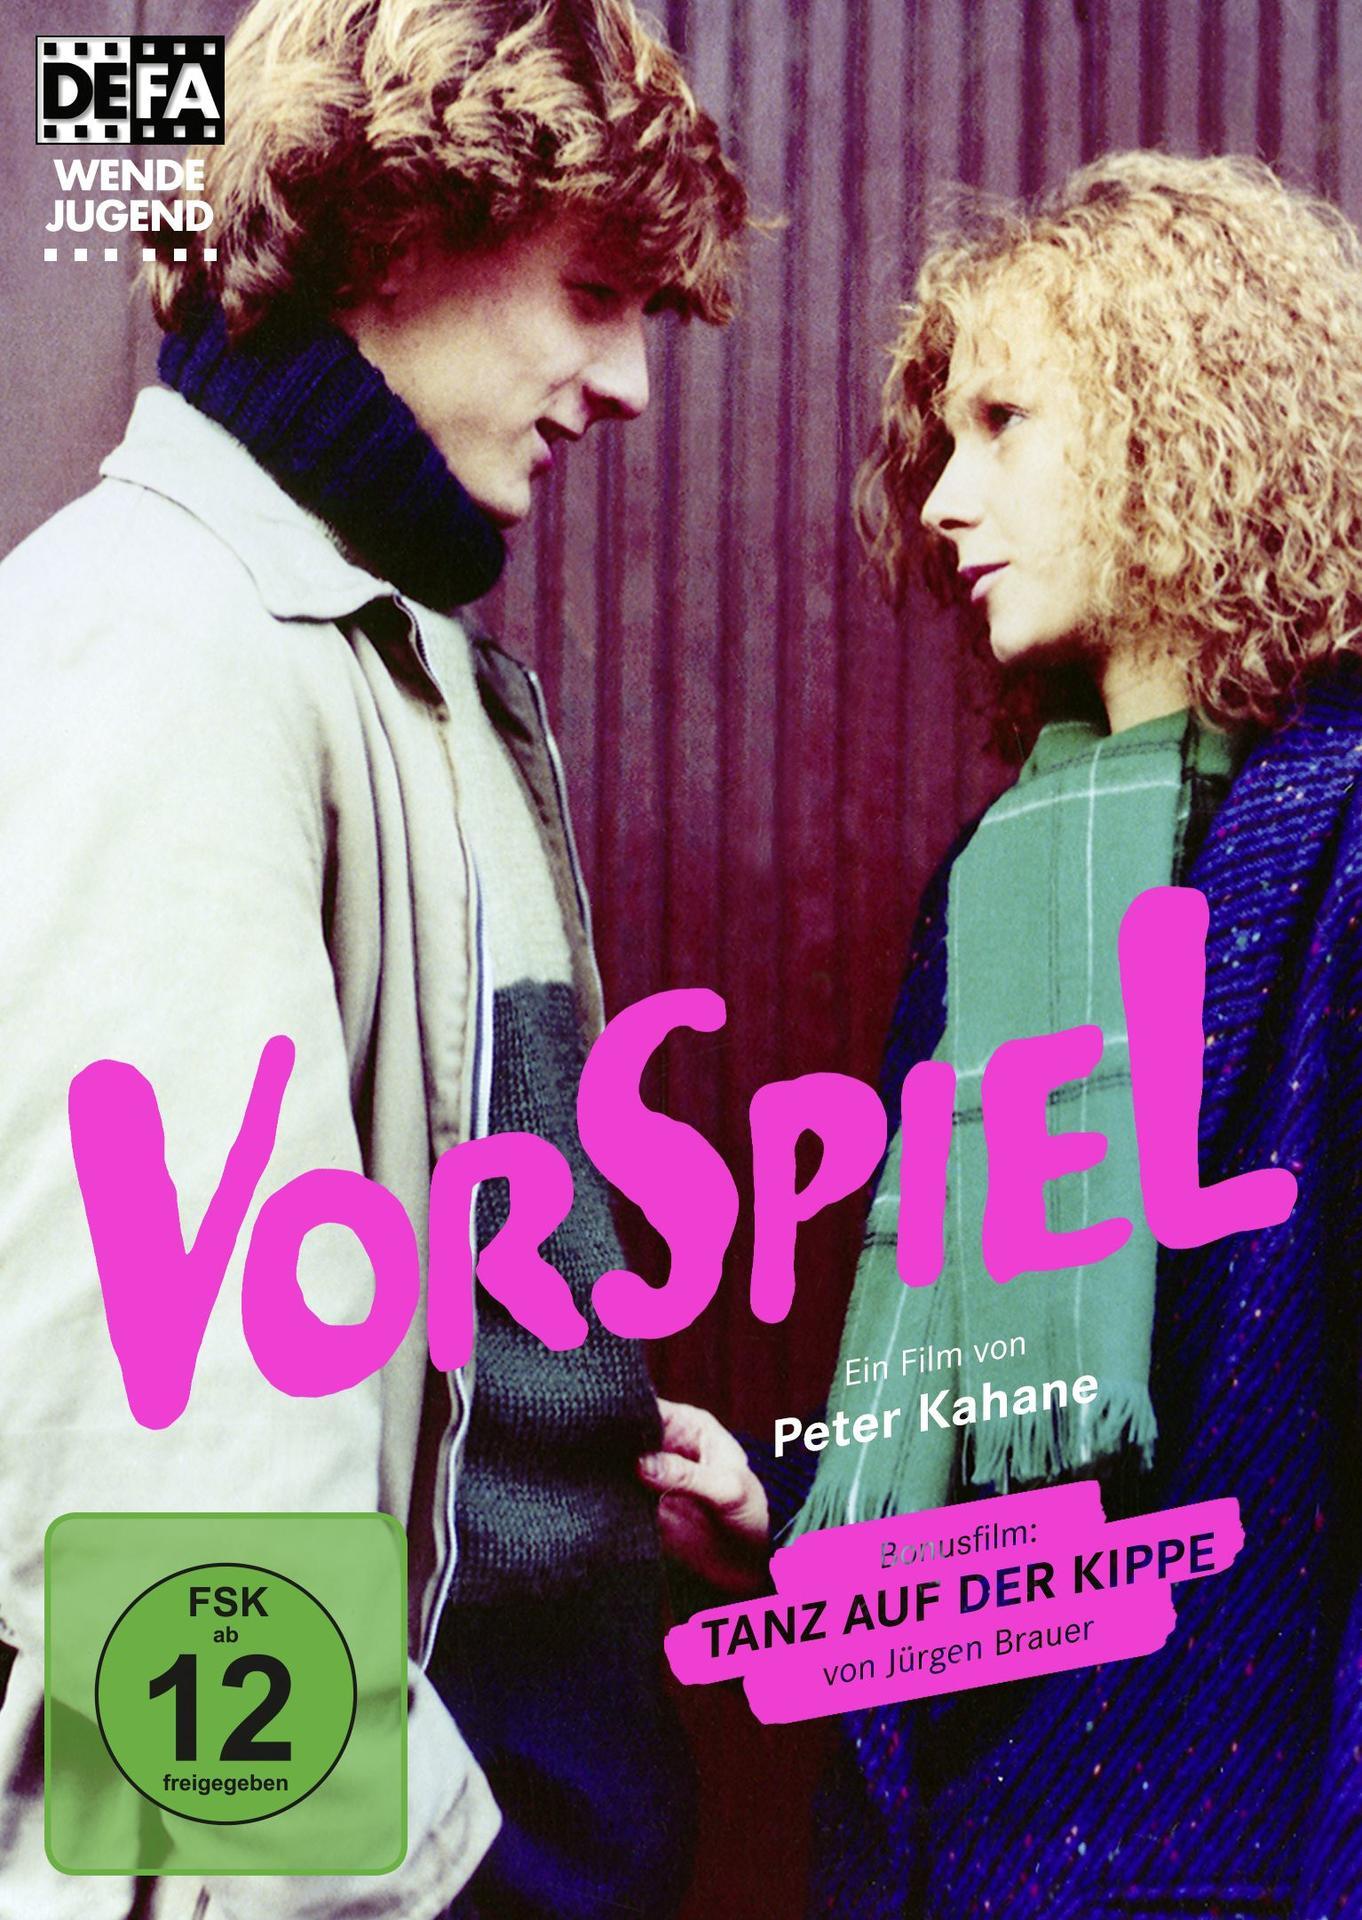 DVD von Brauer) der Vorspiel Tanz Bonusfilm Kippe Jürgen (inkl. auf